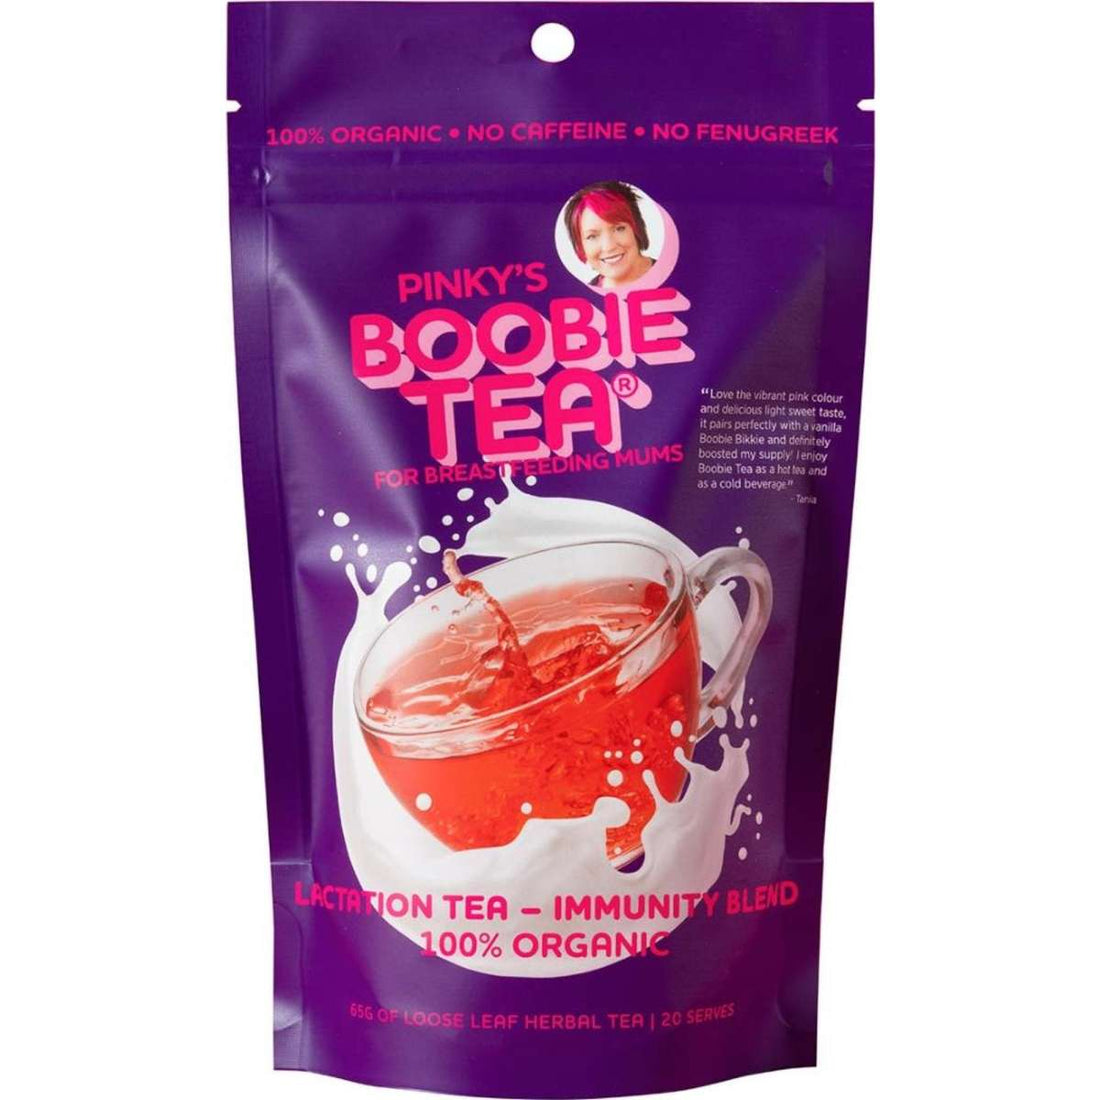 Boobie Bikkies Boobie Tea Immunity Blend 65g